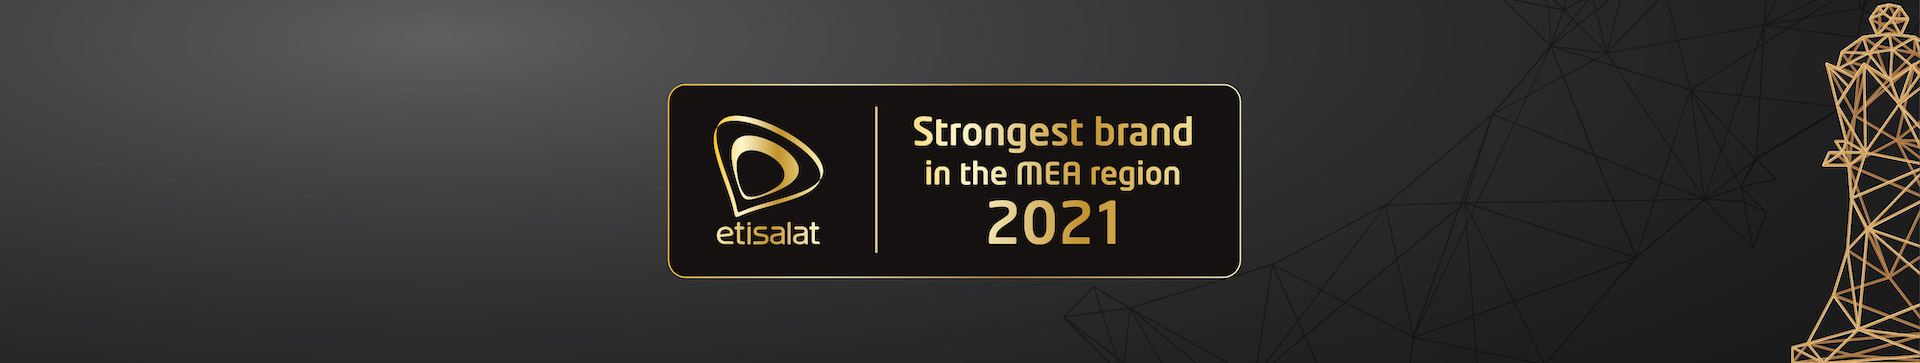 etisalat-strongest-brands-en-1920x363